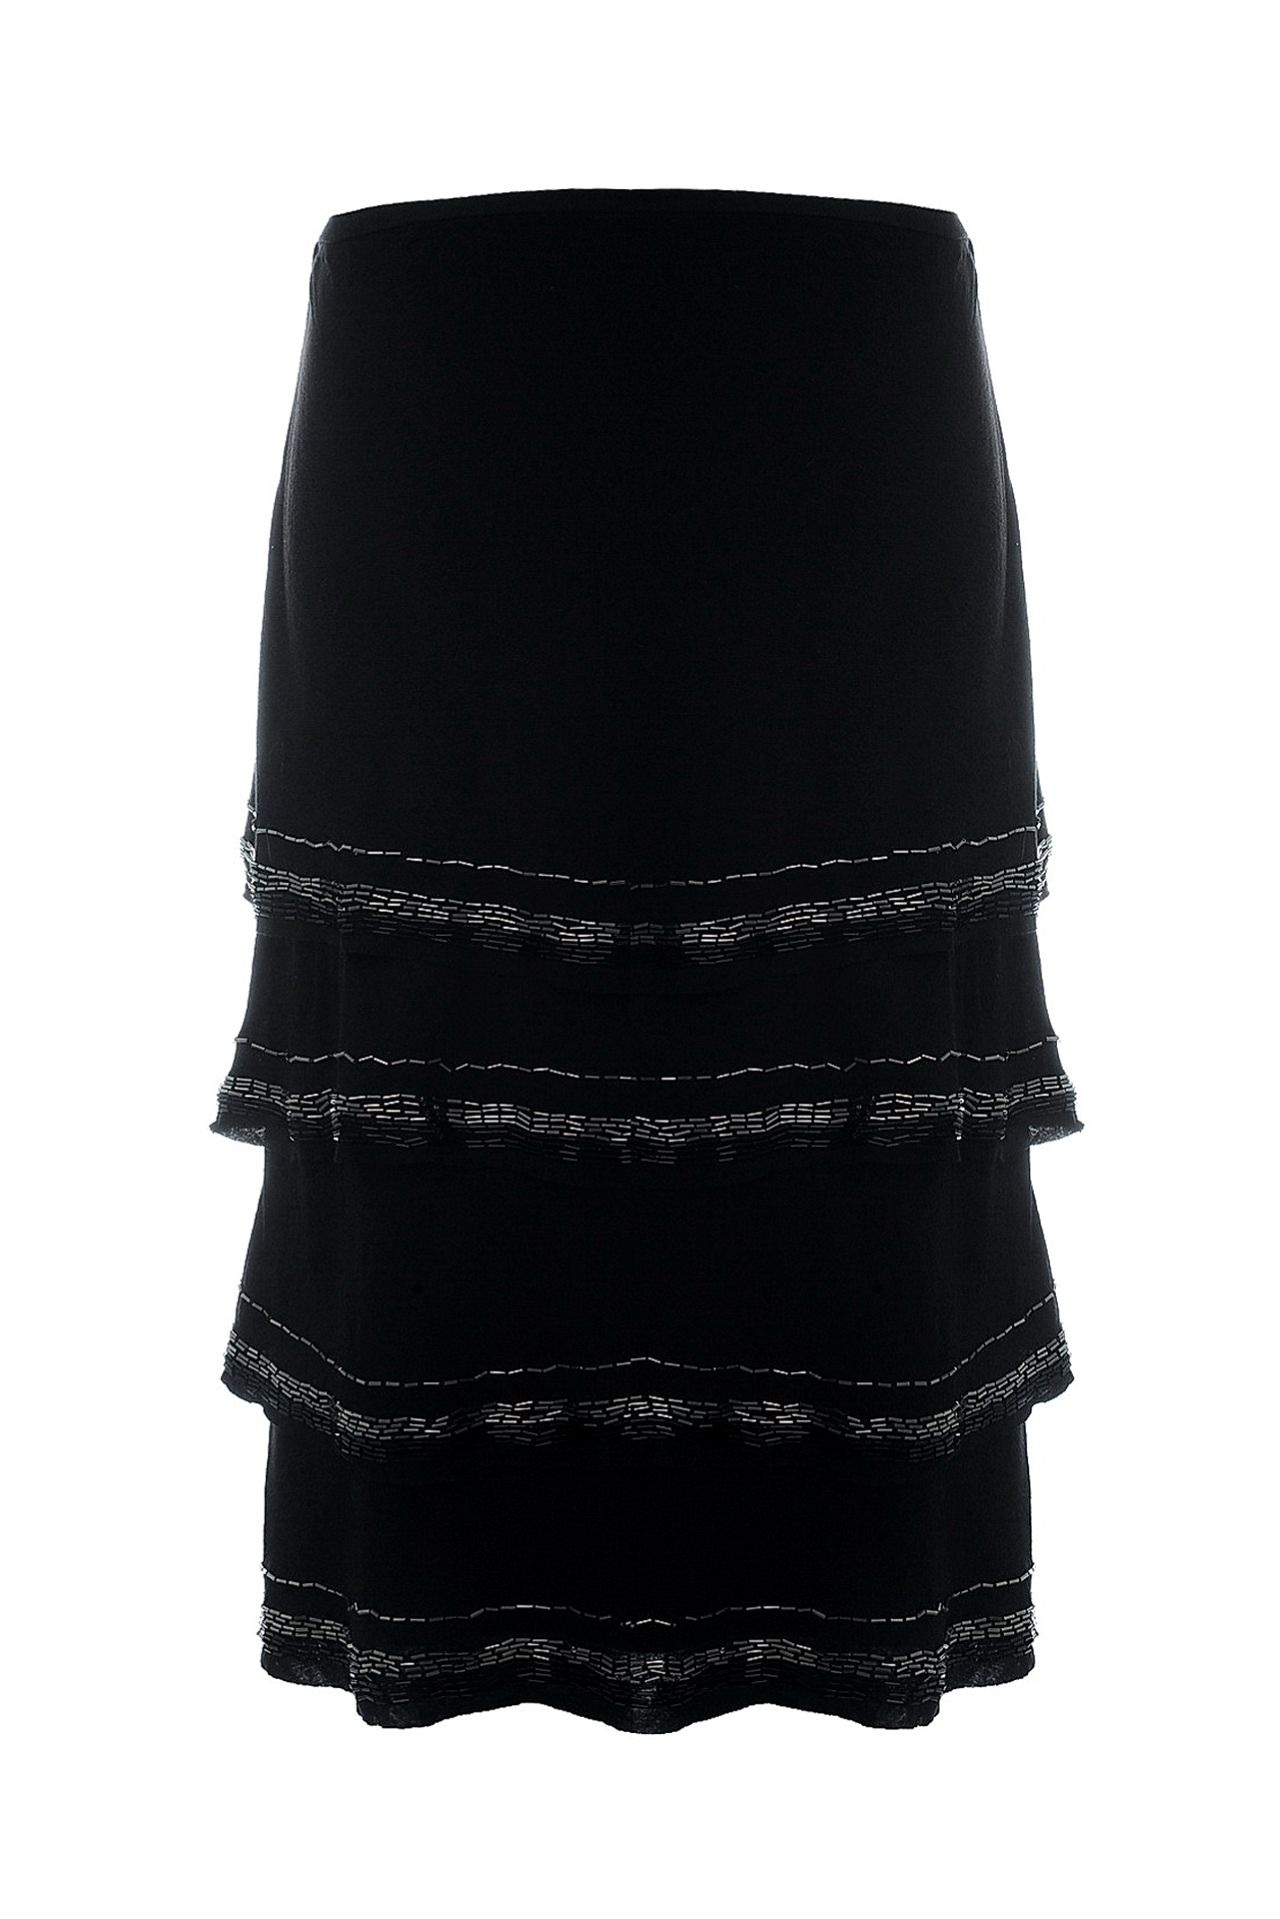 Одежда женская Юбка NOUGAT LONDON (NL1325/11.2). Купить за 7800 руб.